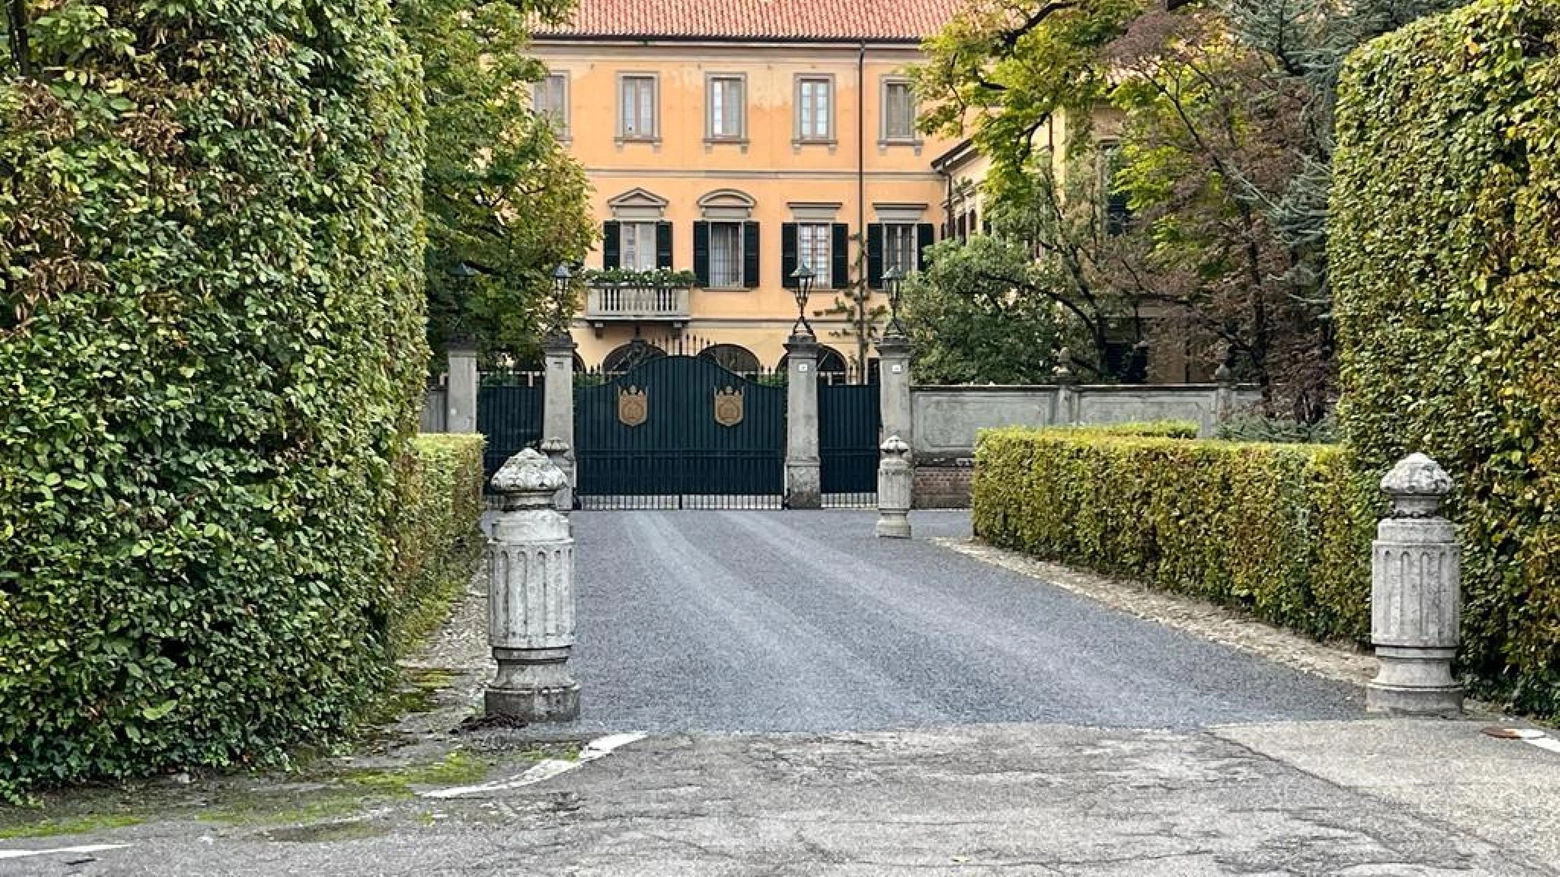 Όλα τα σπίτια του Σίλβιο Μπερλουσκόνι – Μία από τις βίλες του έχει 126 δωμάτια